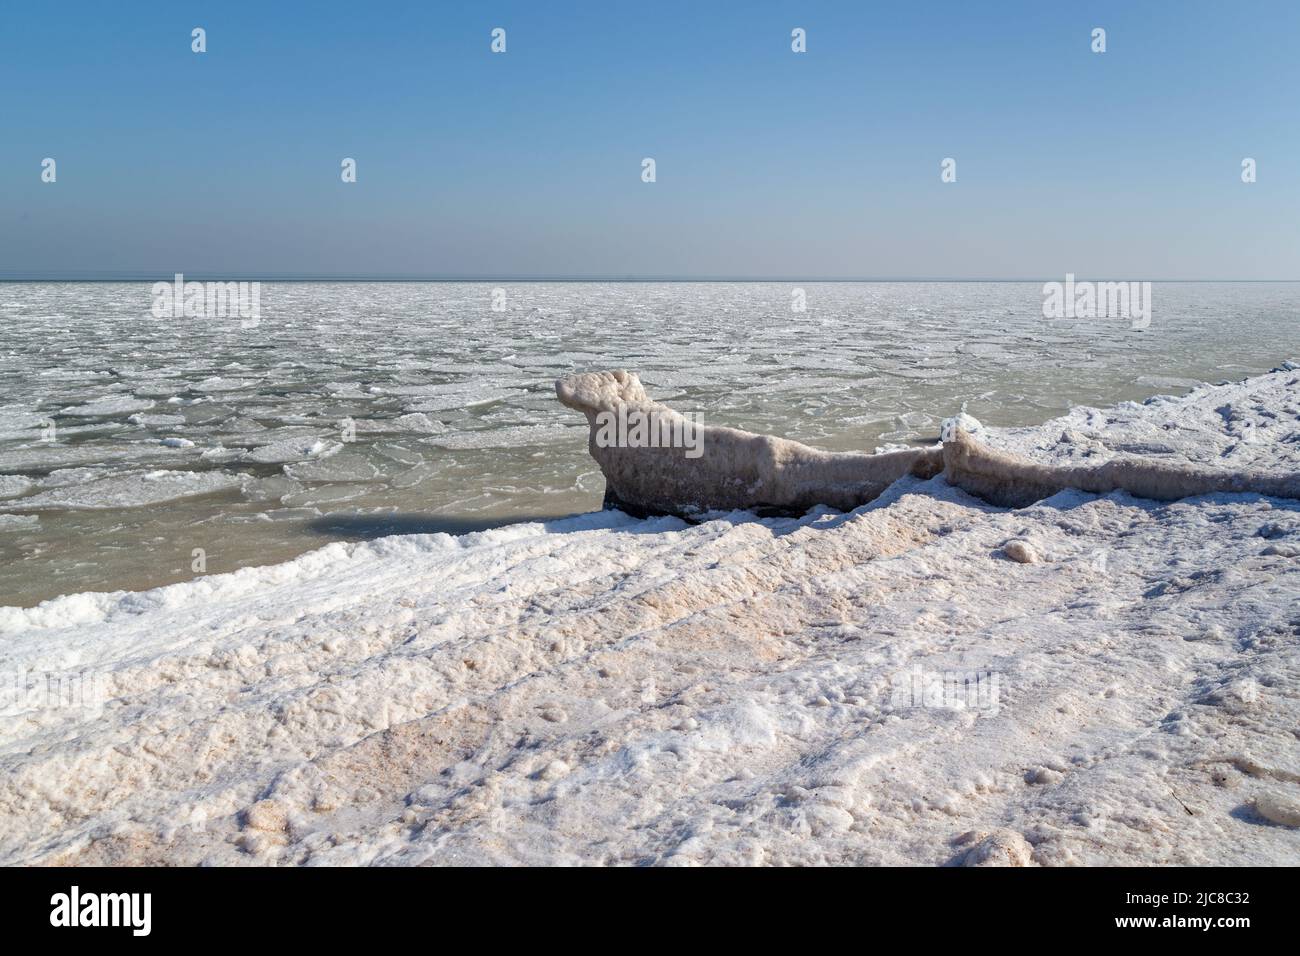 Dies ist die gefrorene Küste von Asov mit einer eisigen Surflinie und eisigen Schlamm in der Nähe der Küste. Stockfoto